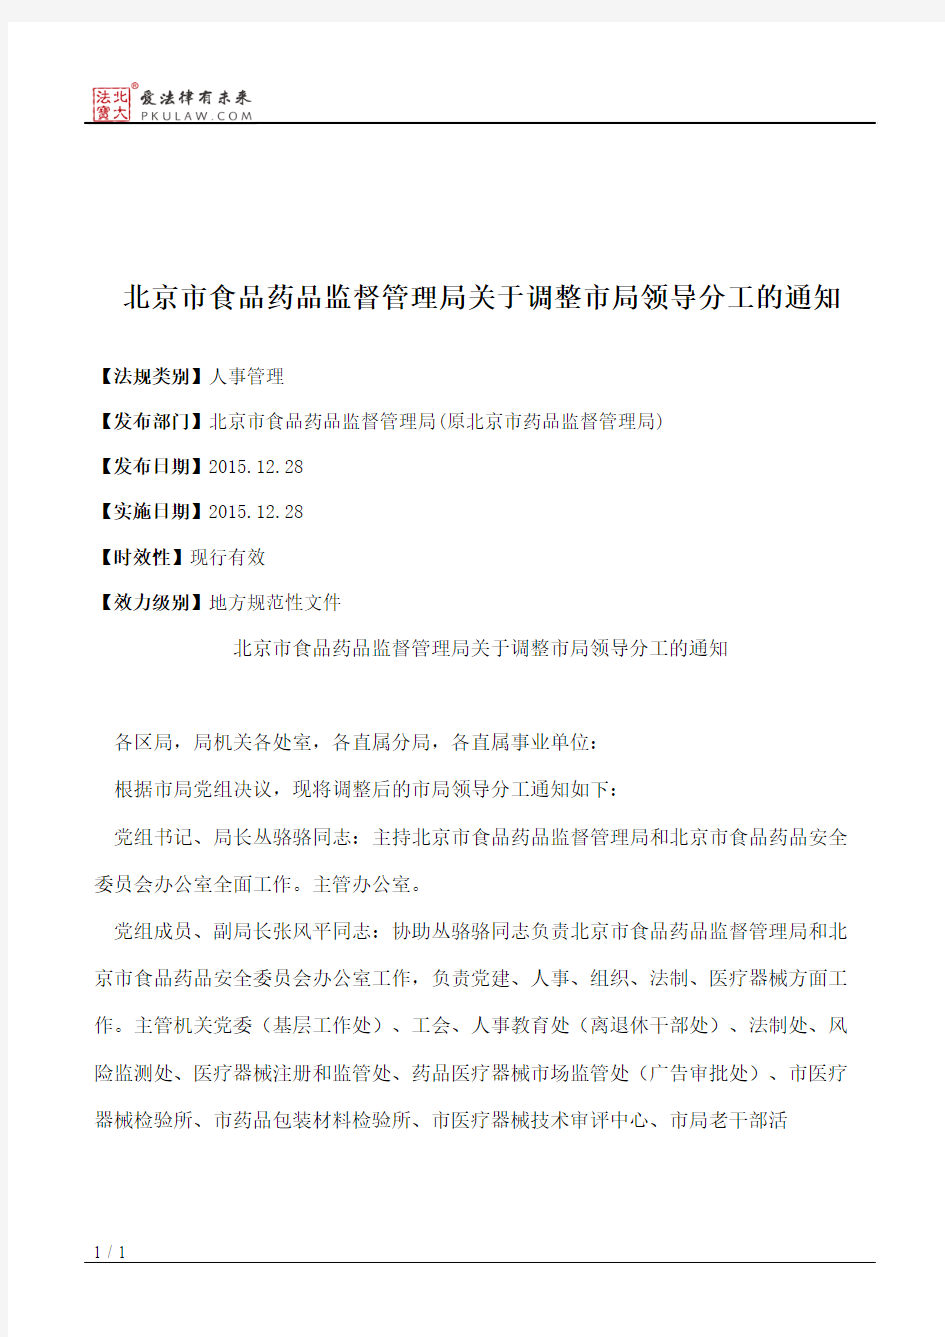 北京市食品药品监督管理局关于调整市局领导分工的通知